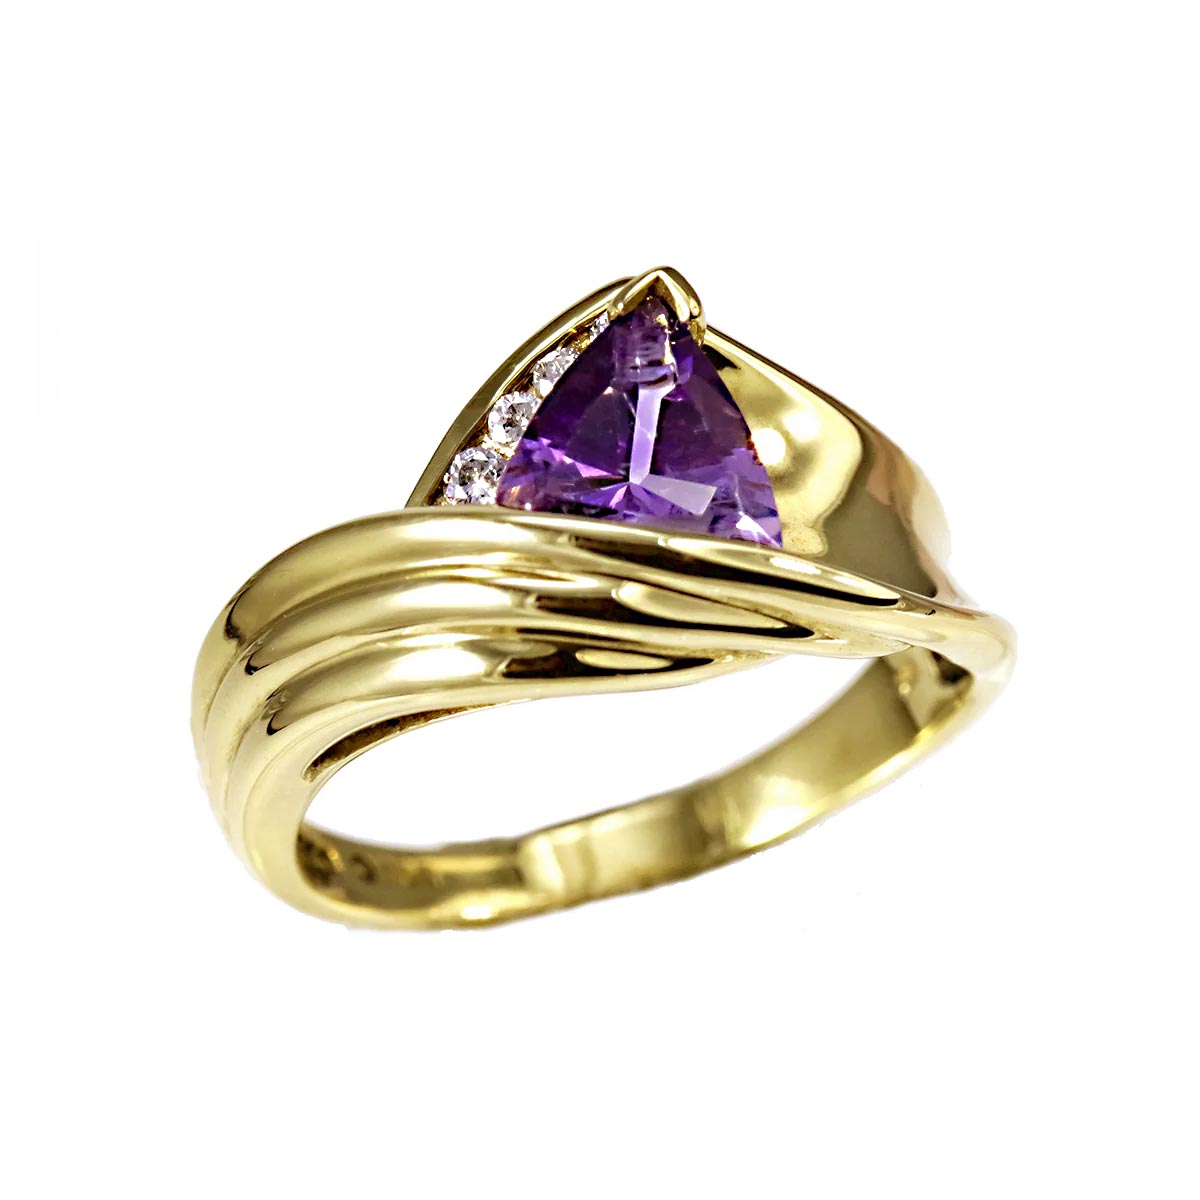 SPECIAL ORDER - 14K Gold Amethyst & Diamond Ring